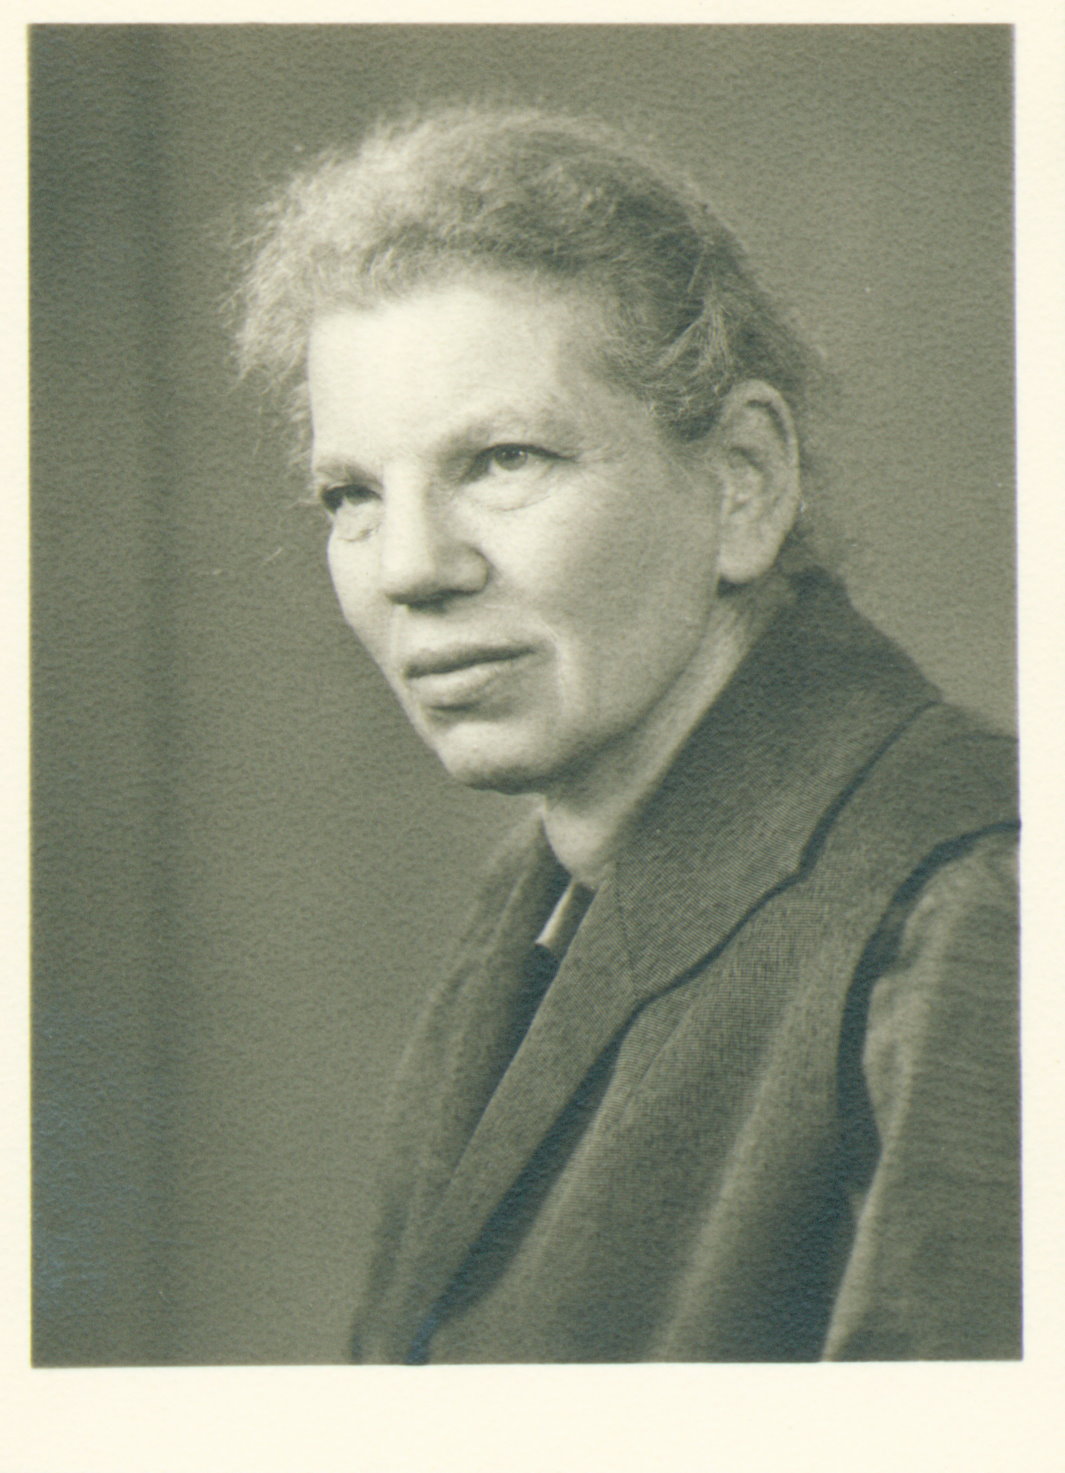  Gertrud Luckner, 1966, Quelle: Privatbesitz Elias H. Füllenbach, Fotograf(in): unbekannt.